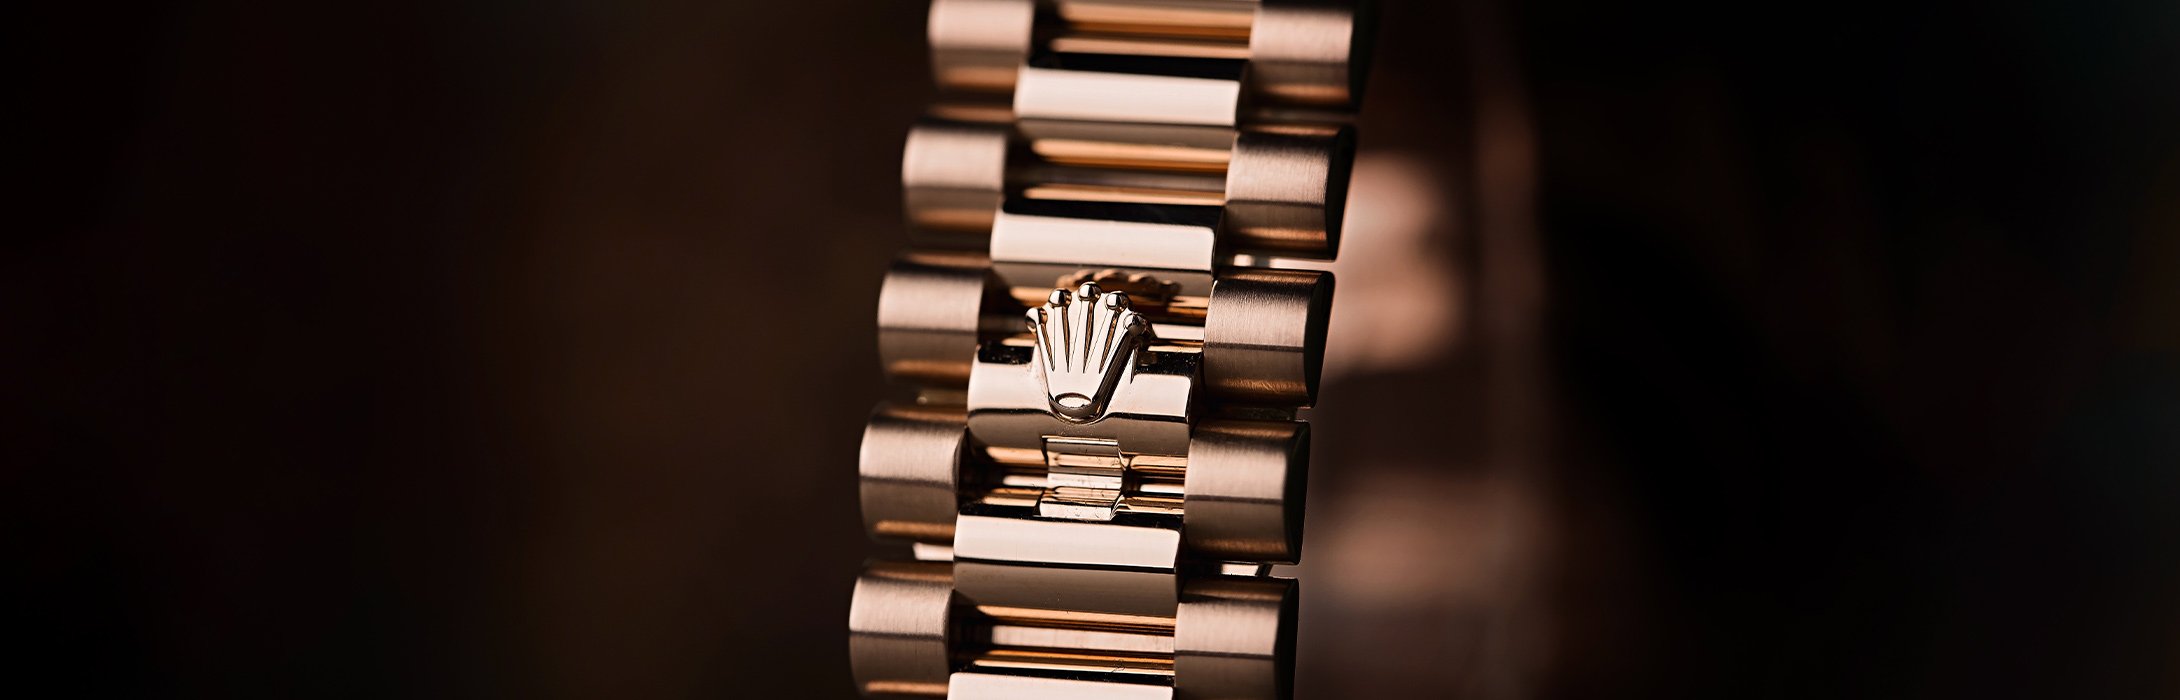 Rolex Watch Logo